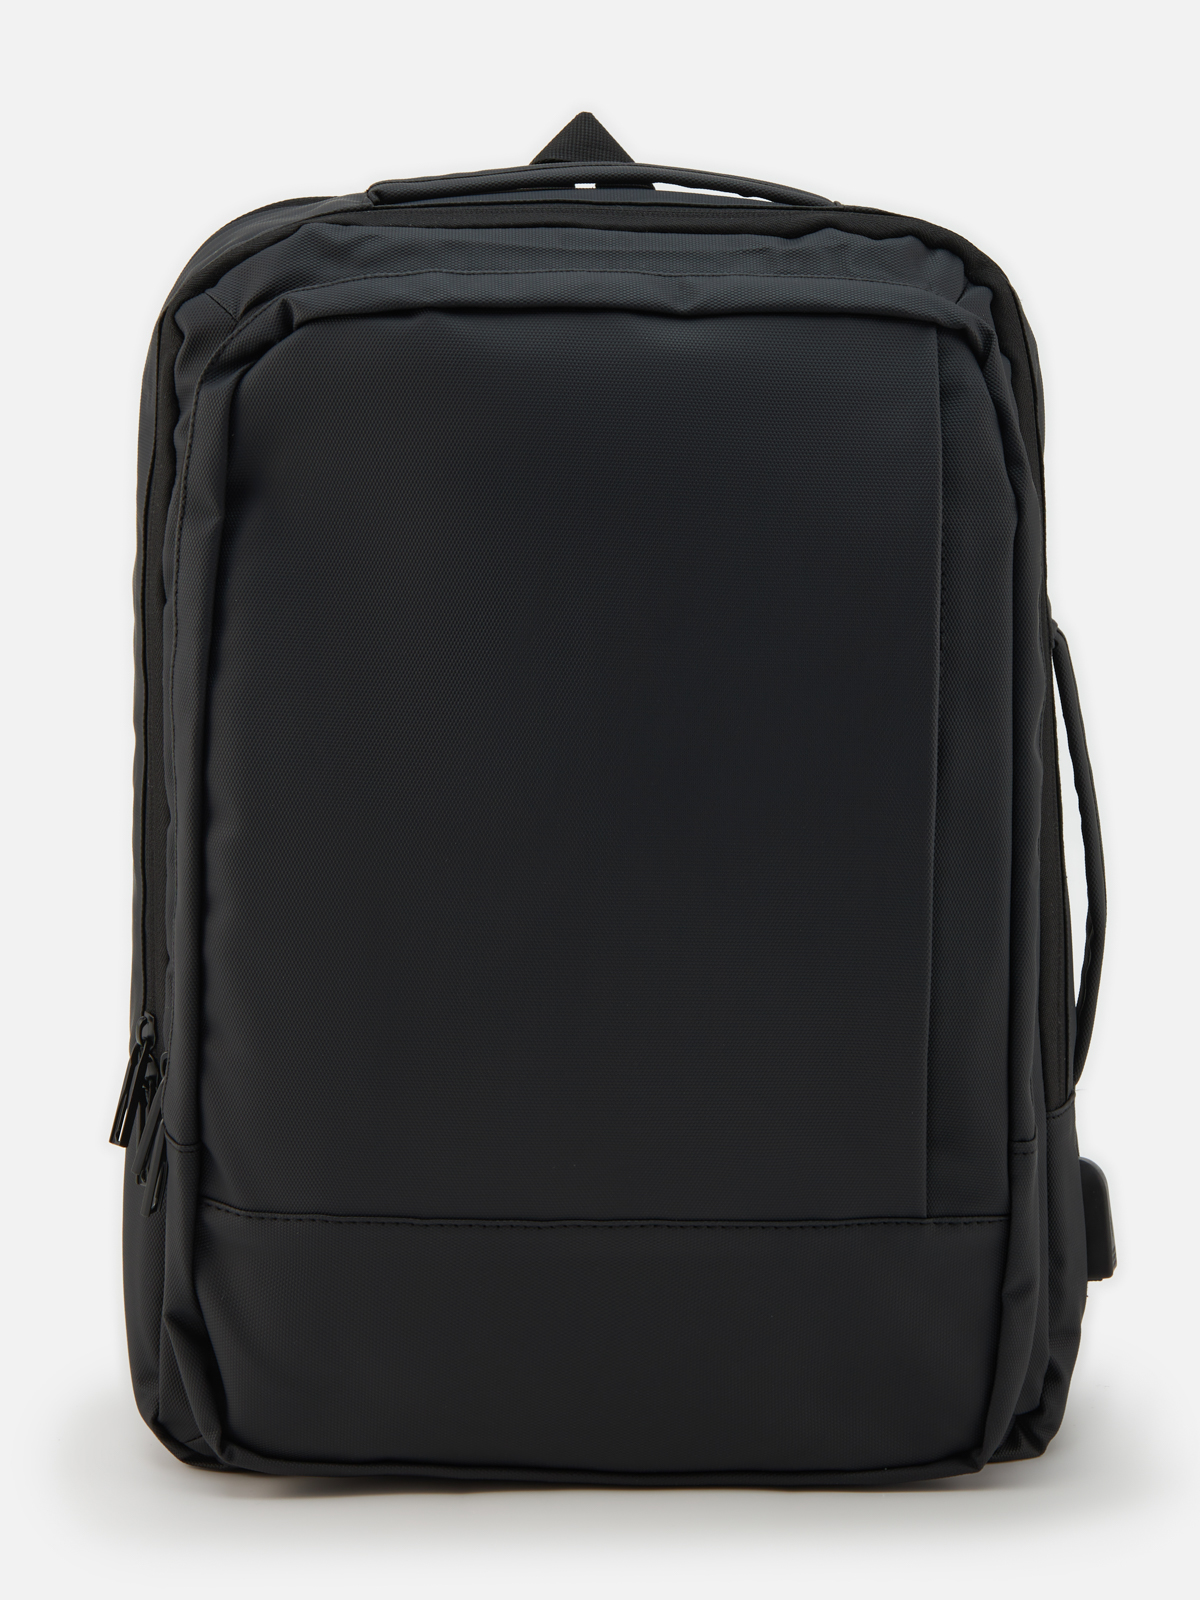 Рюкзак Hermann Vauck для мужчин, чёрный, 35x14x49 см, SUT372 - купить в Мегамаркет Москва Пушкино, цена на Мегамаркет